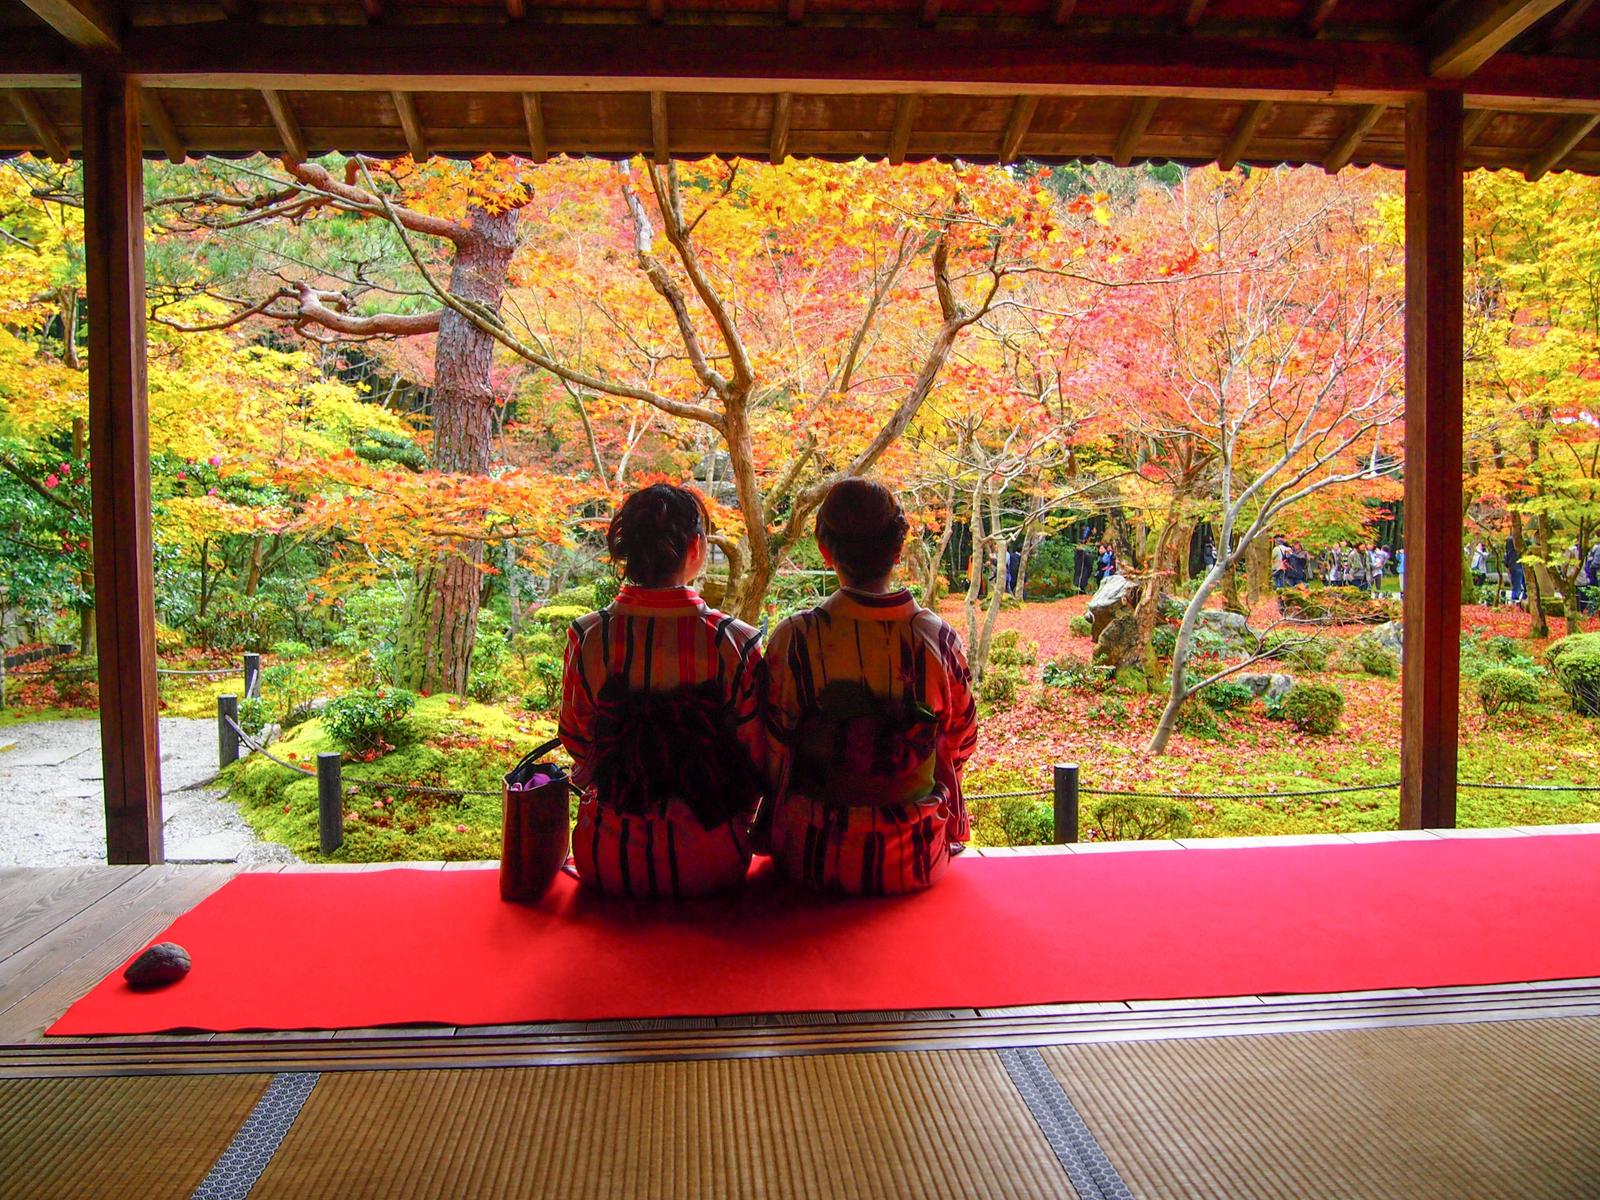 京都 新緑 紅葉 の額縁庭園が素敵 圓光寺 Erika5ankoが投稿したフォトブック Lemon8